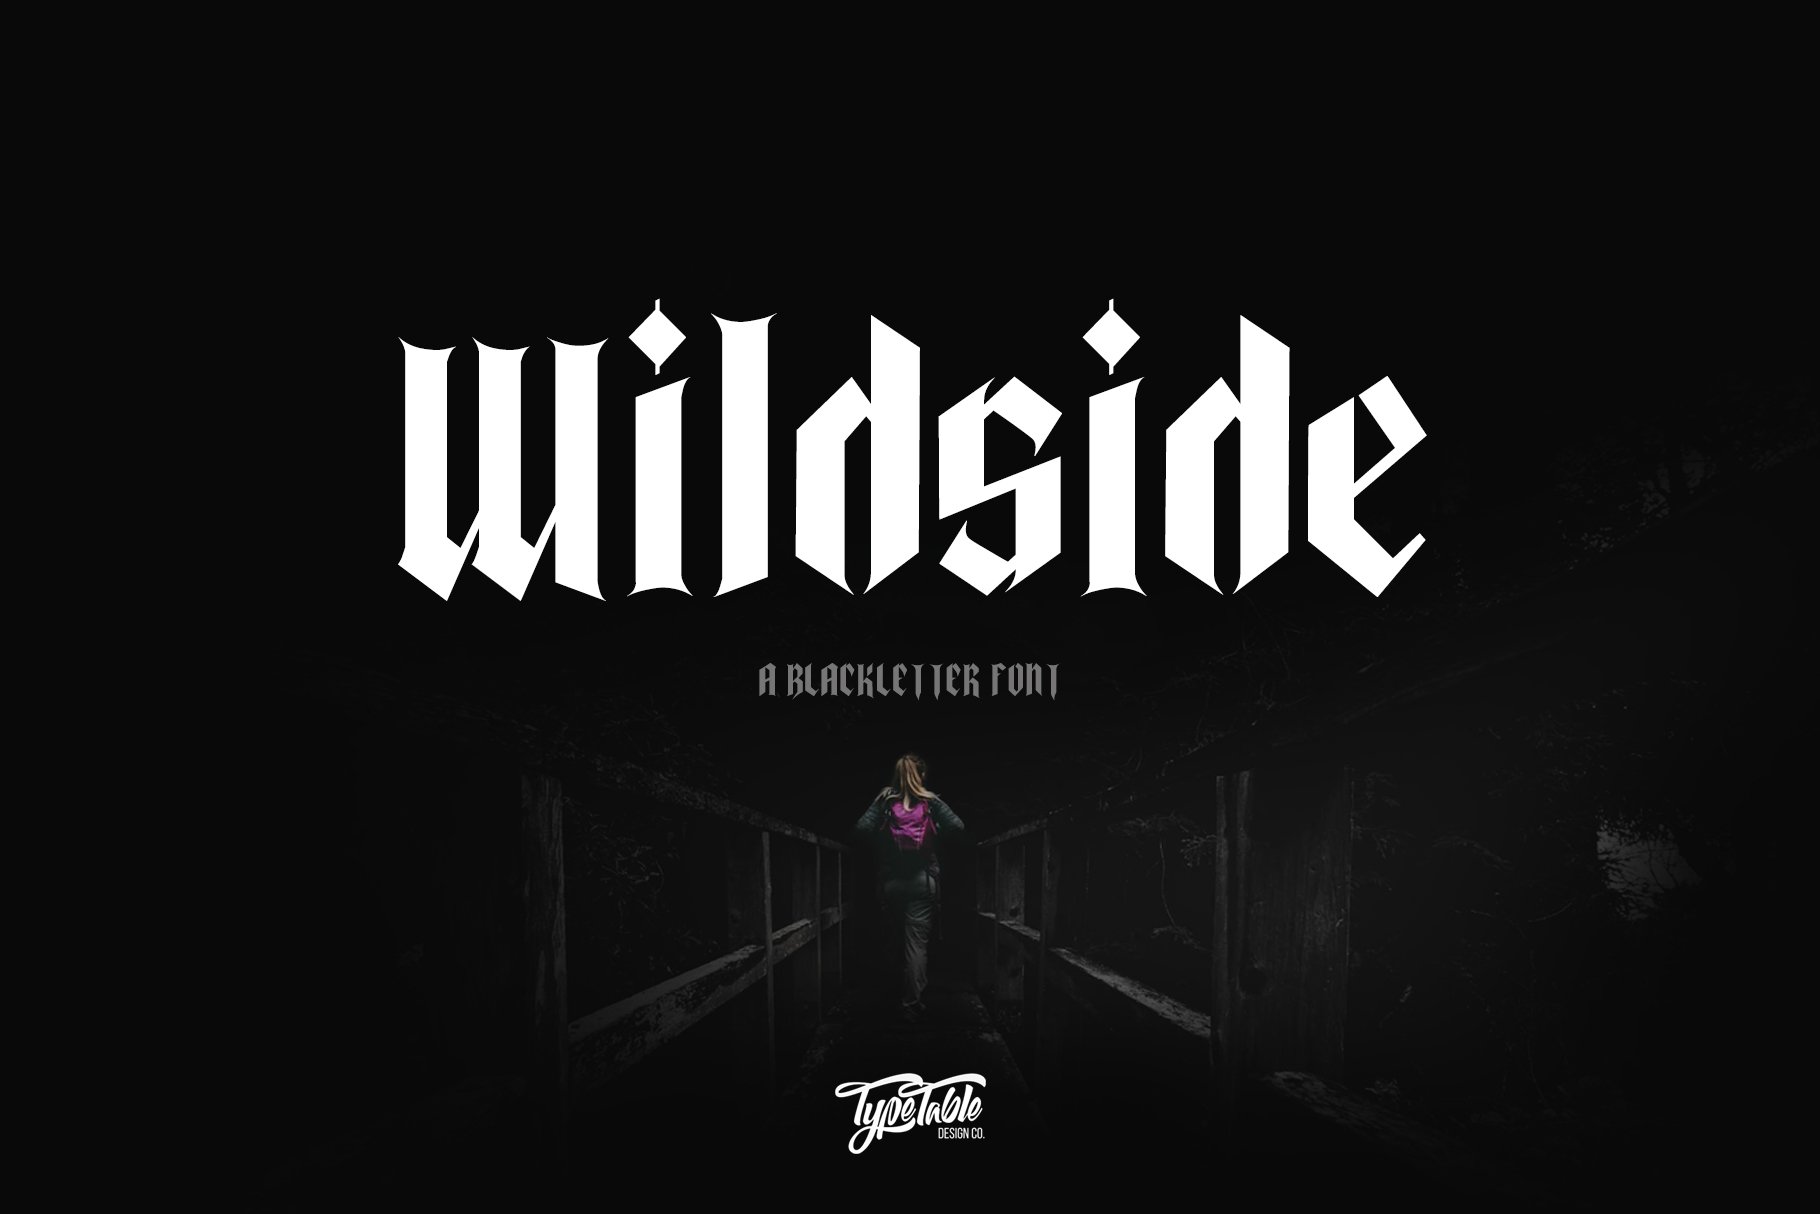 Wildside Blackletter Font cover image.